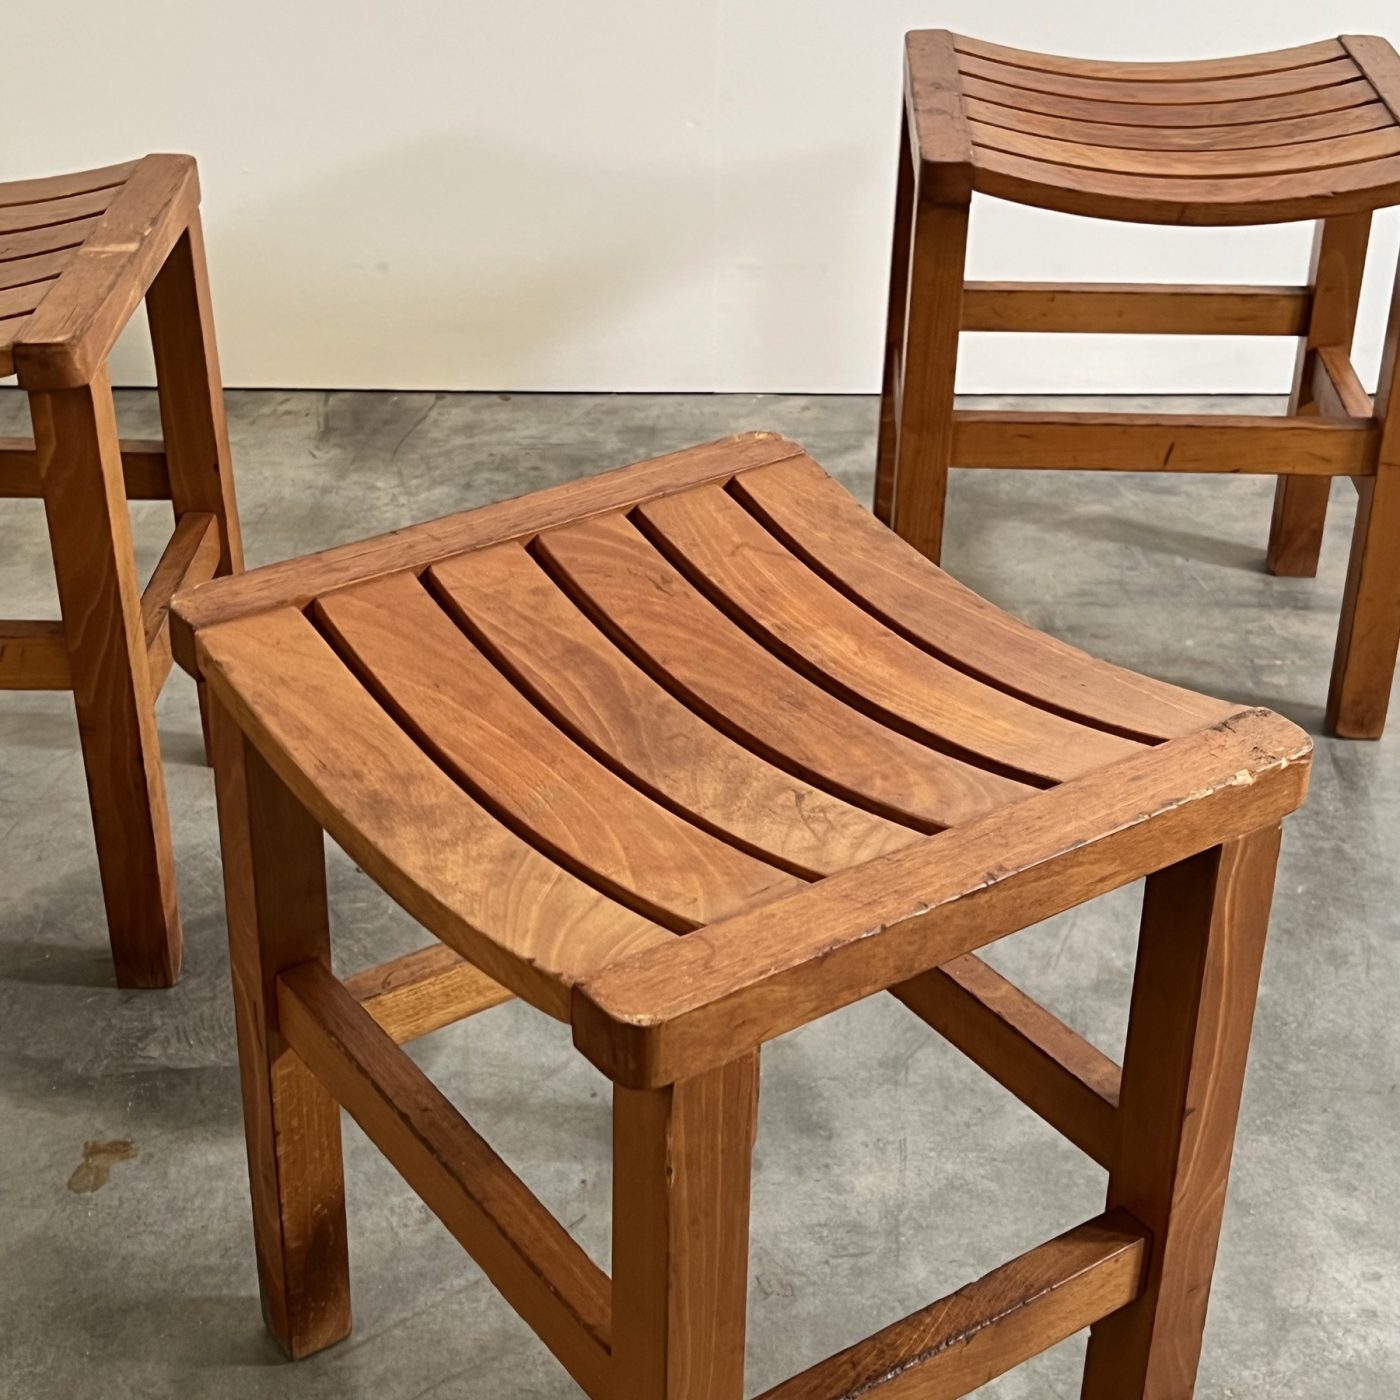 objet-vagabond-vintage-stools0001